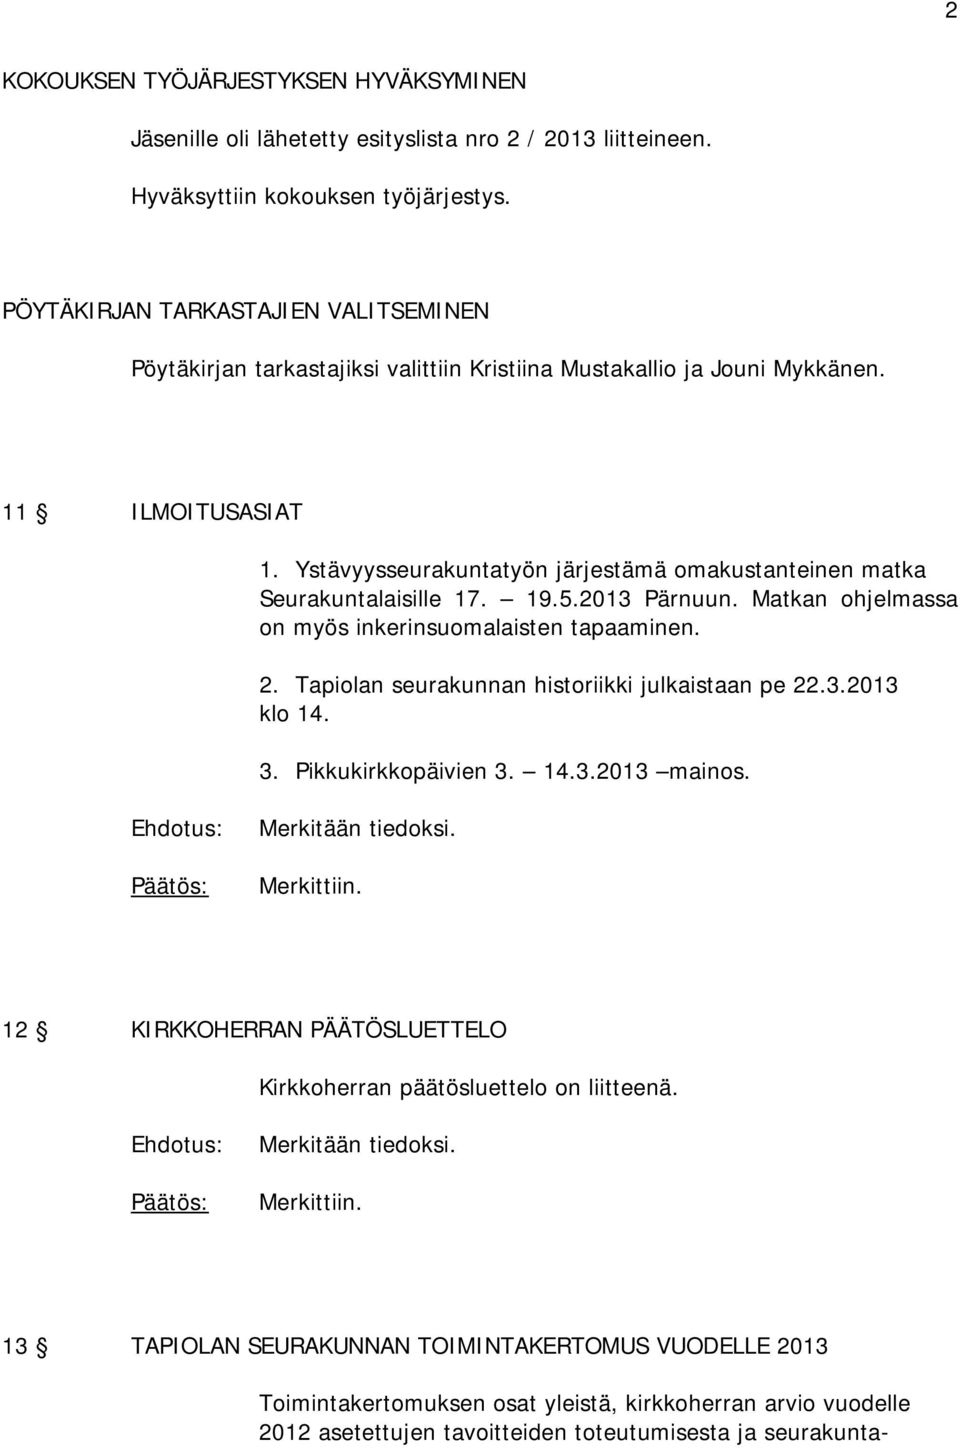 Ystävyysseurakuntatyön järjestämä omakustanteinen matka Seurakuntalaisille 17. 19.5.2013 Pärnuun. Matkan ohjelmassa on myös inkerinsuomalaisten tapaaminen. 2.